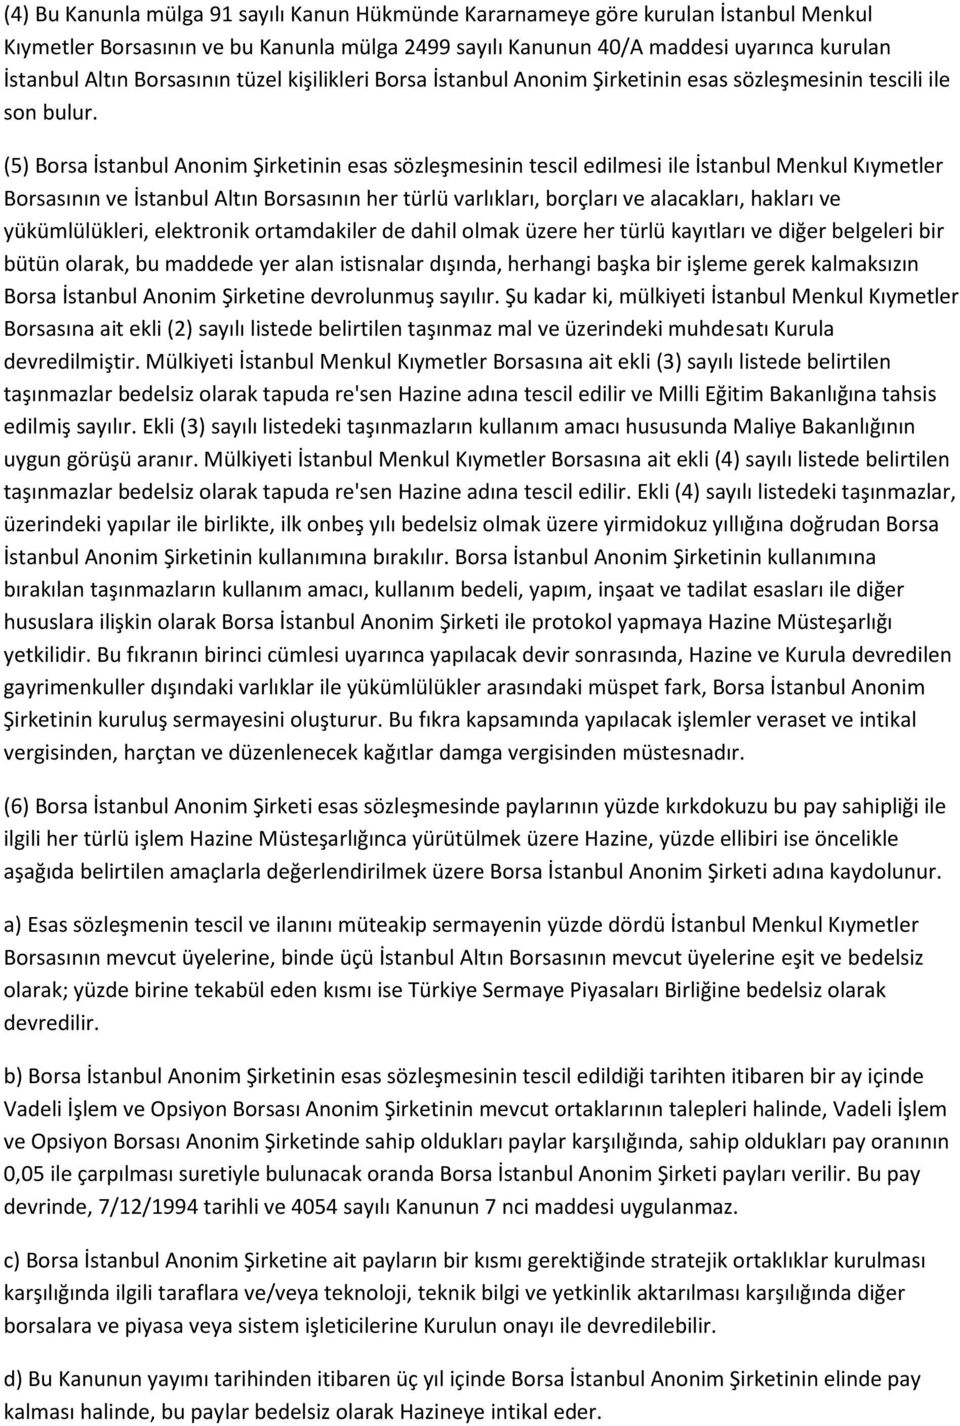 (5) Borsa İstanbul Anonim Şirketinin esas sözleşmesinin tescil edilmesi ile İstanbul Menkul Kıymetler Borsasının ve İstanbul Altın Borsasının her türlü varlıkları, borçları ve alacakları, hakları ve